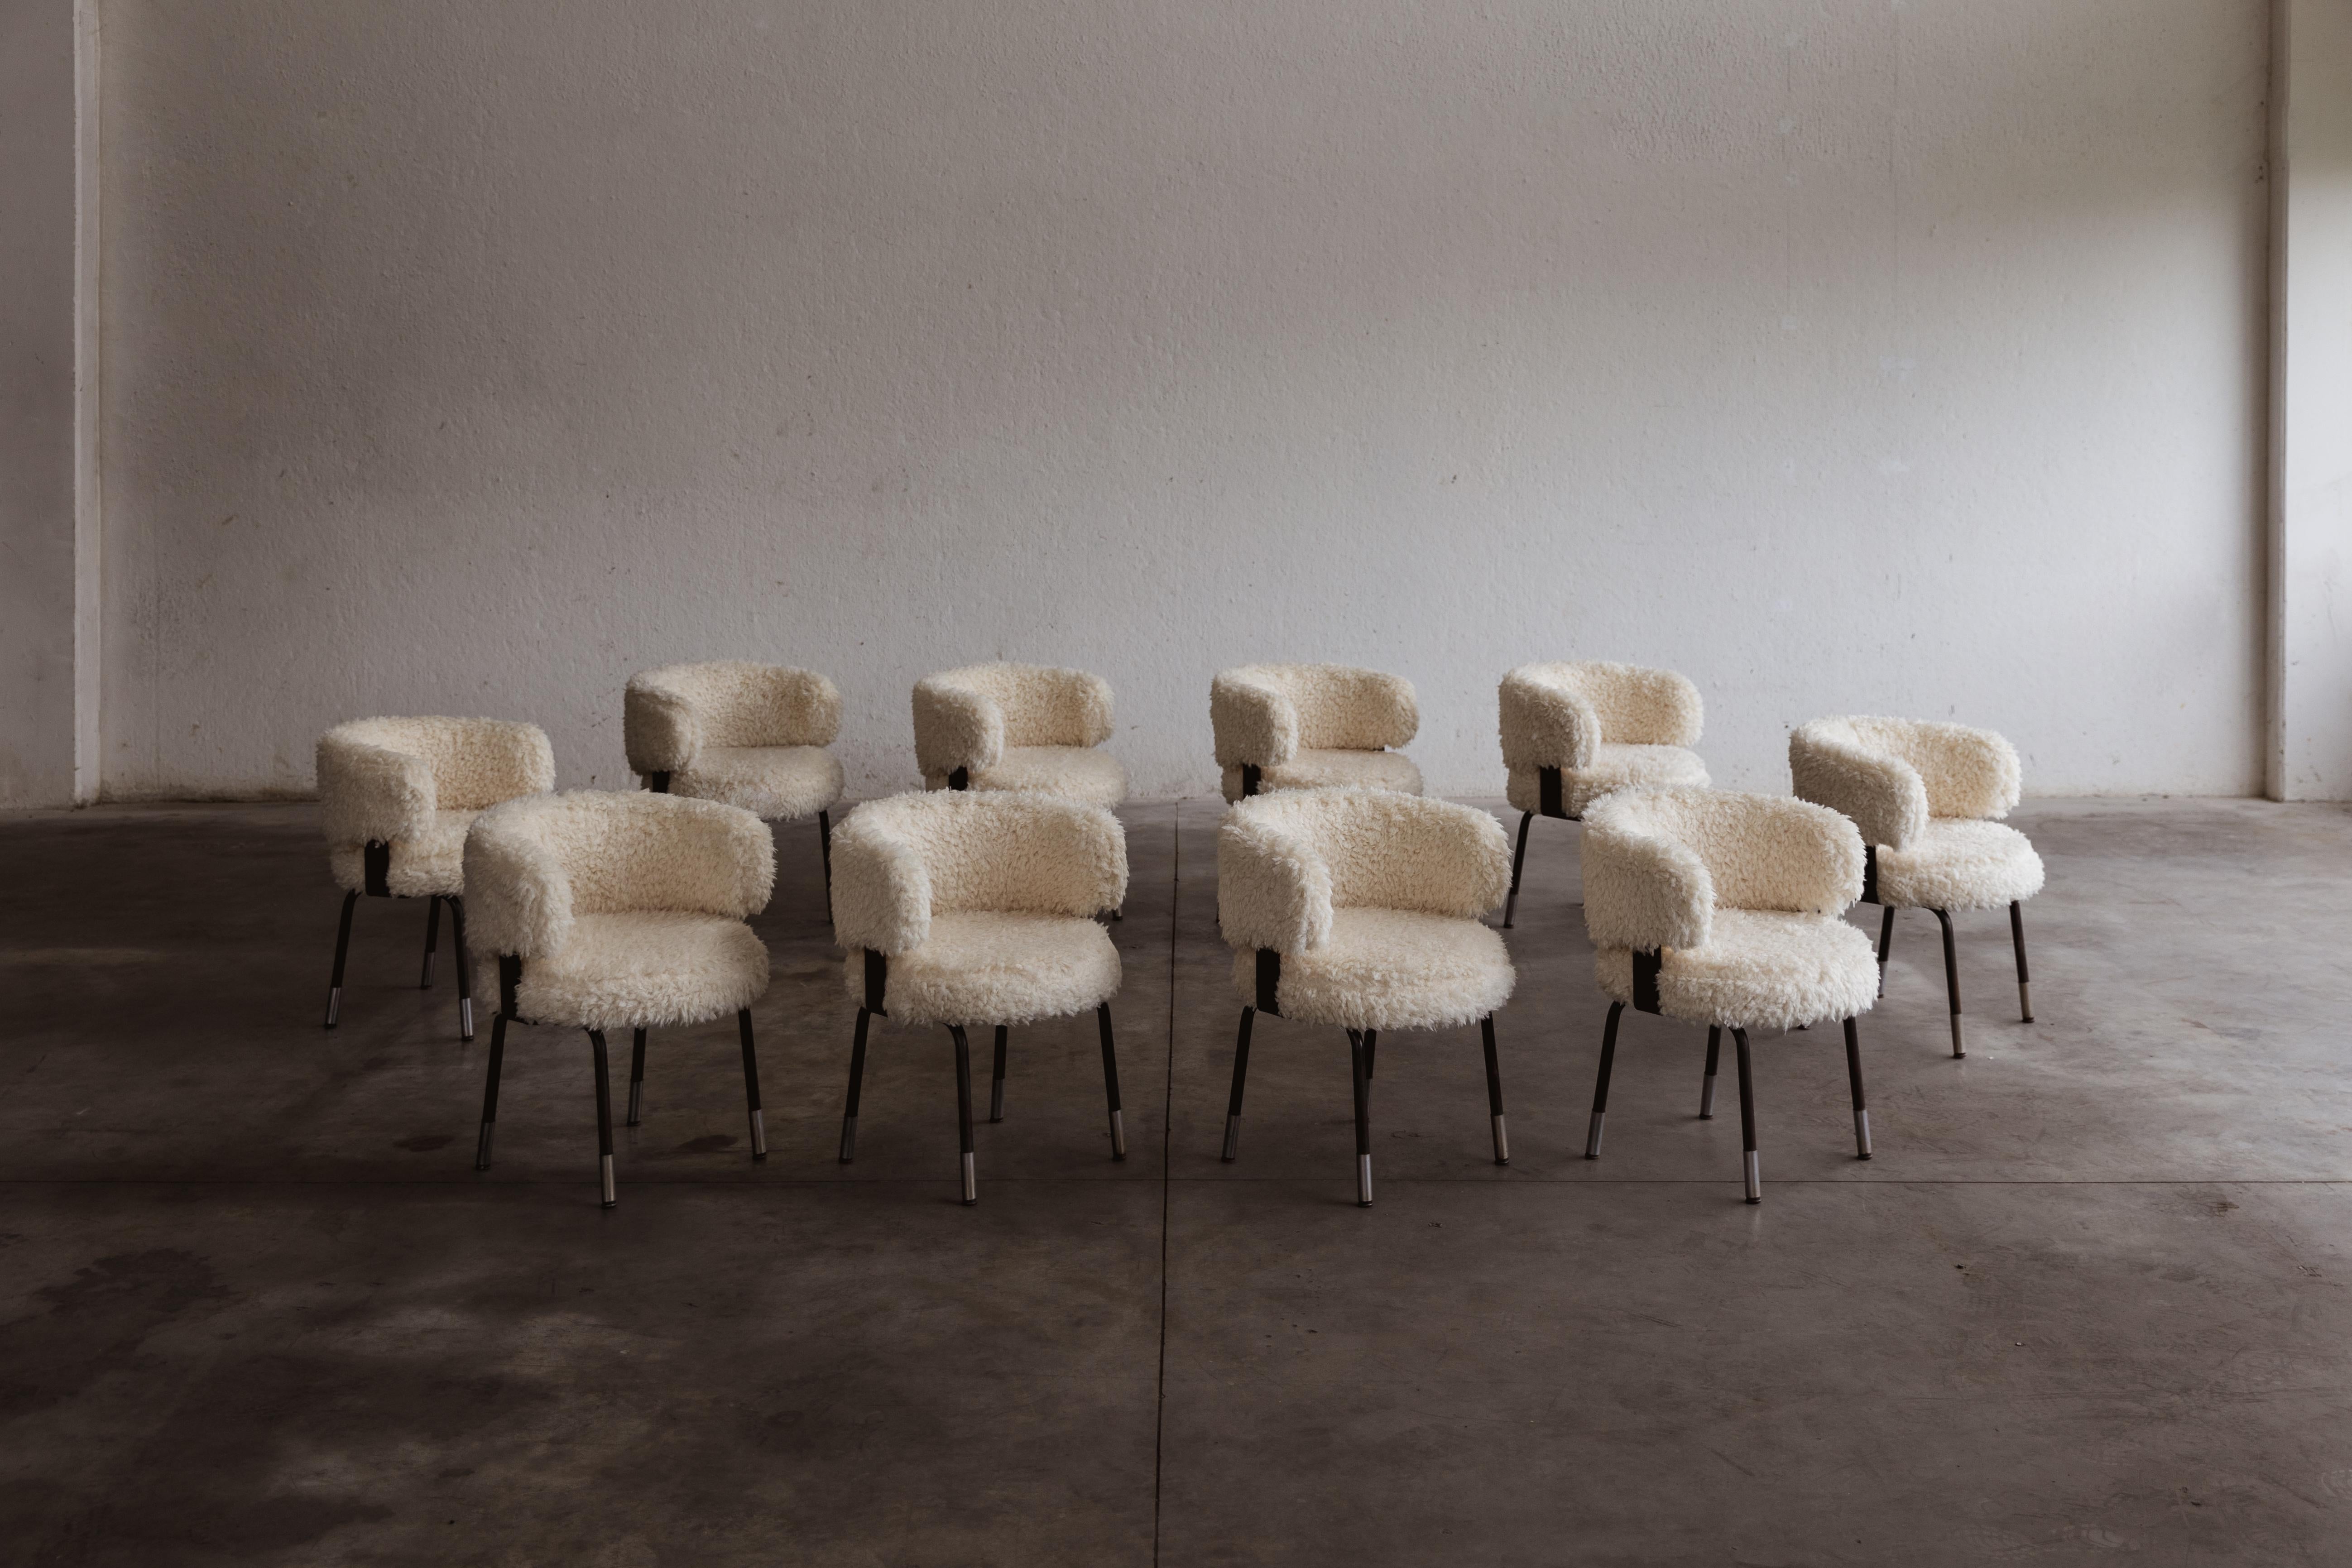 Chaises de salle à manger Gianni Moscatelli pour Formanova, fausse fourrure et fer, Italie, 1968, ensemble de dix.

Ces chaises sont des objets intemporels conçus par Gianni Moscatelli pour Formanova dans les années 1960. Son design présente des